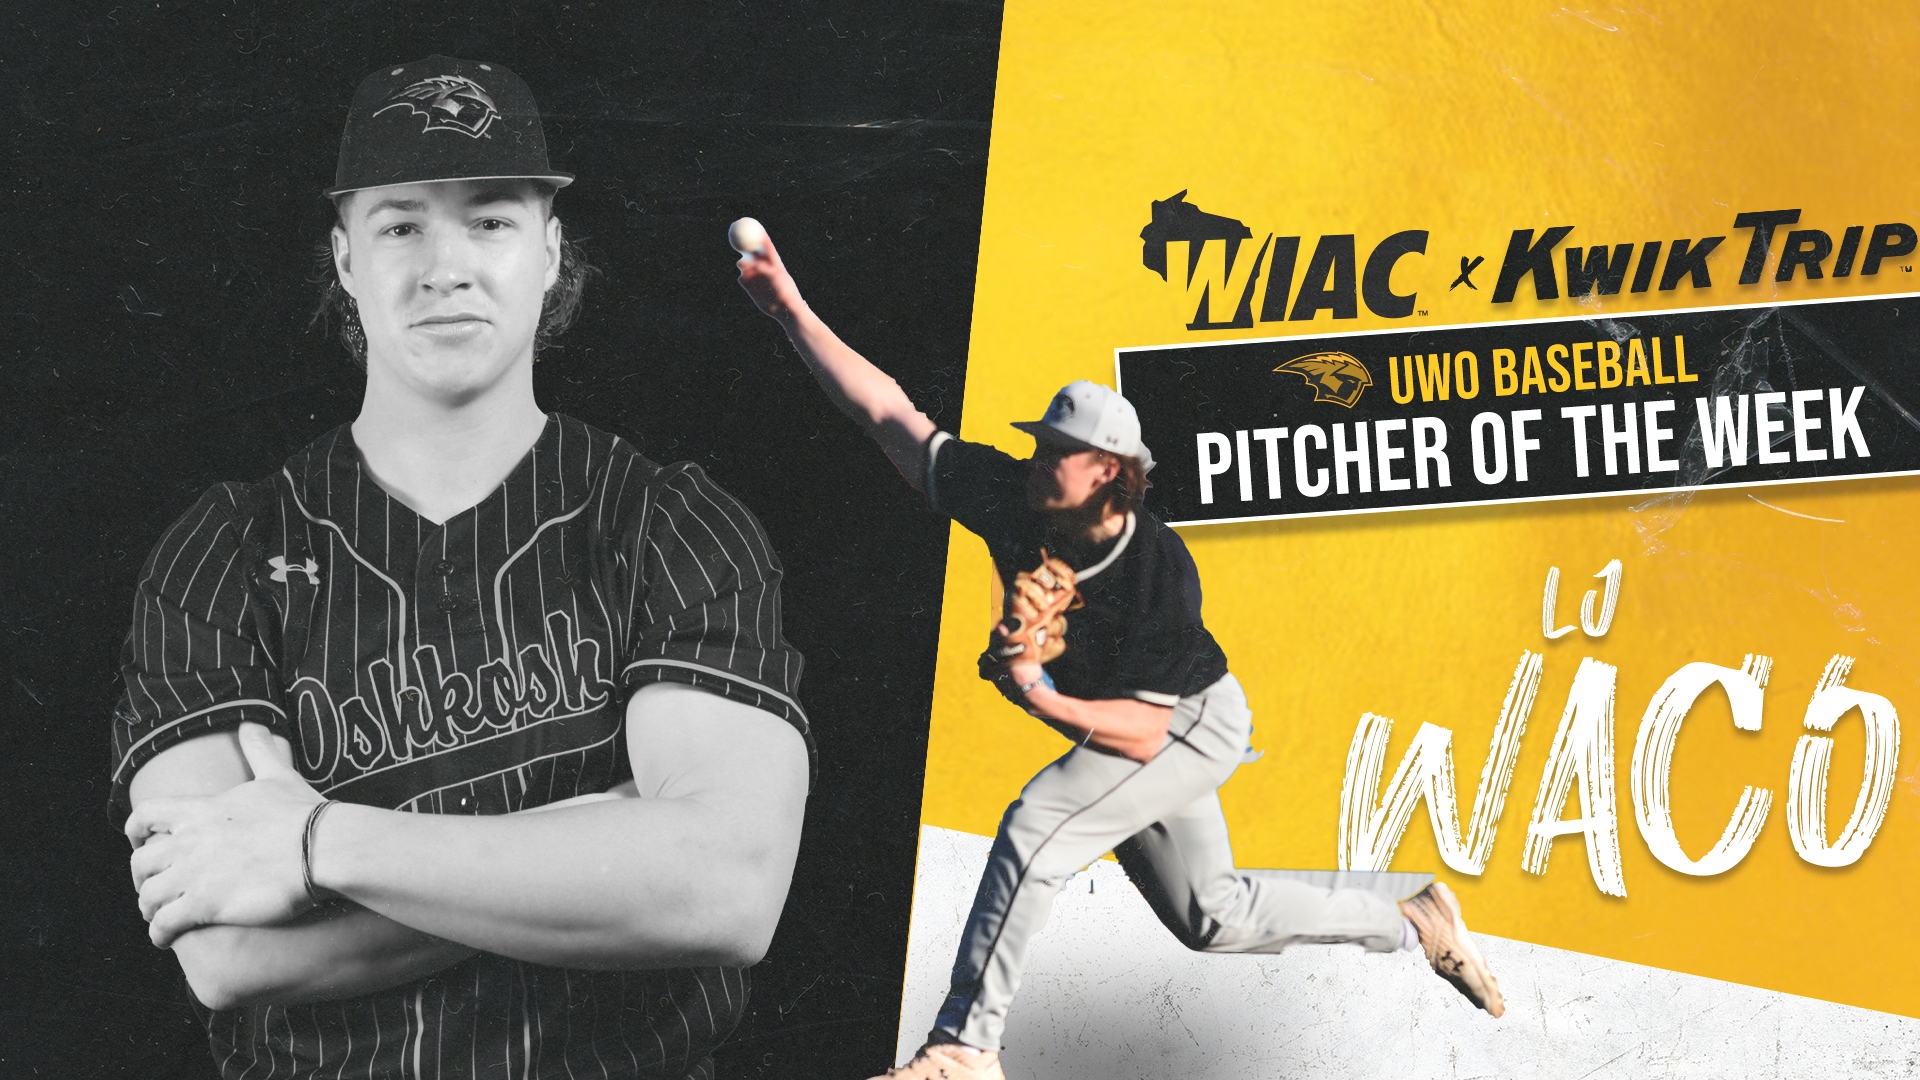 LJ Waco, WIAC x Kwik Trip Pitcher of the Week (April 24-30)